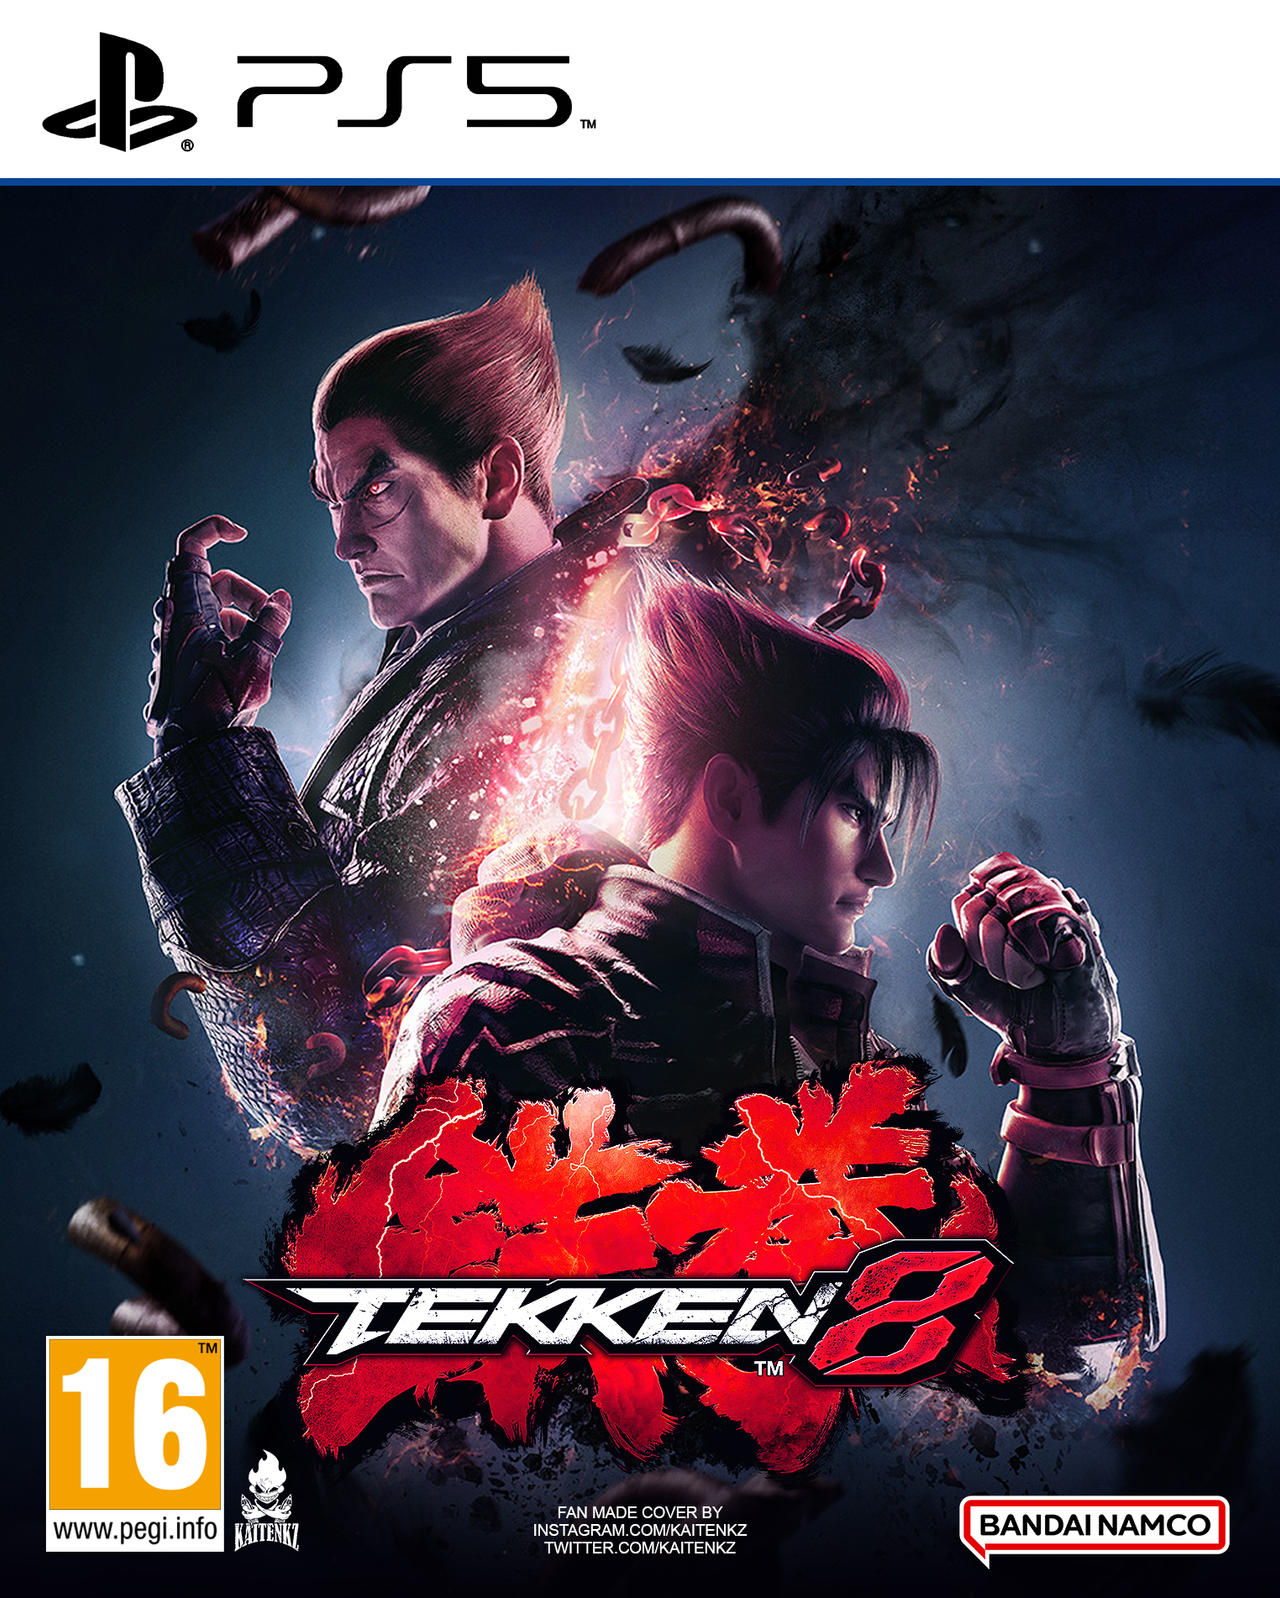 Tekken 8 Re-Design Cover (Ultimate Ver.) by KaitenkzGraphix on